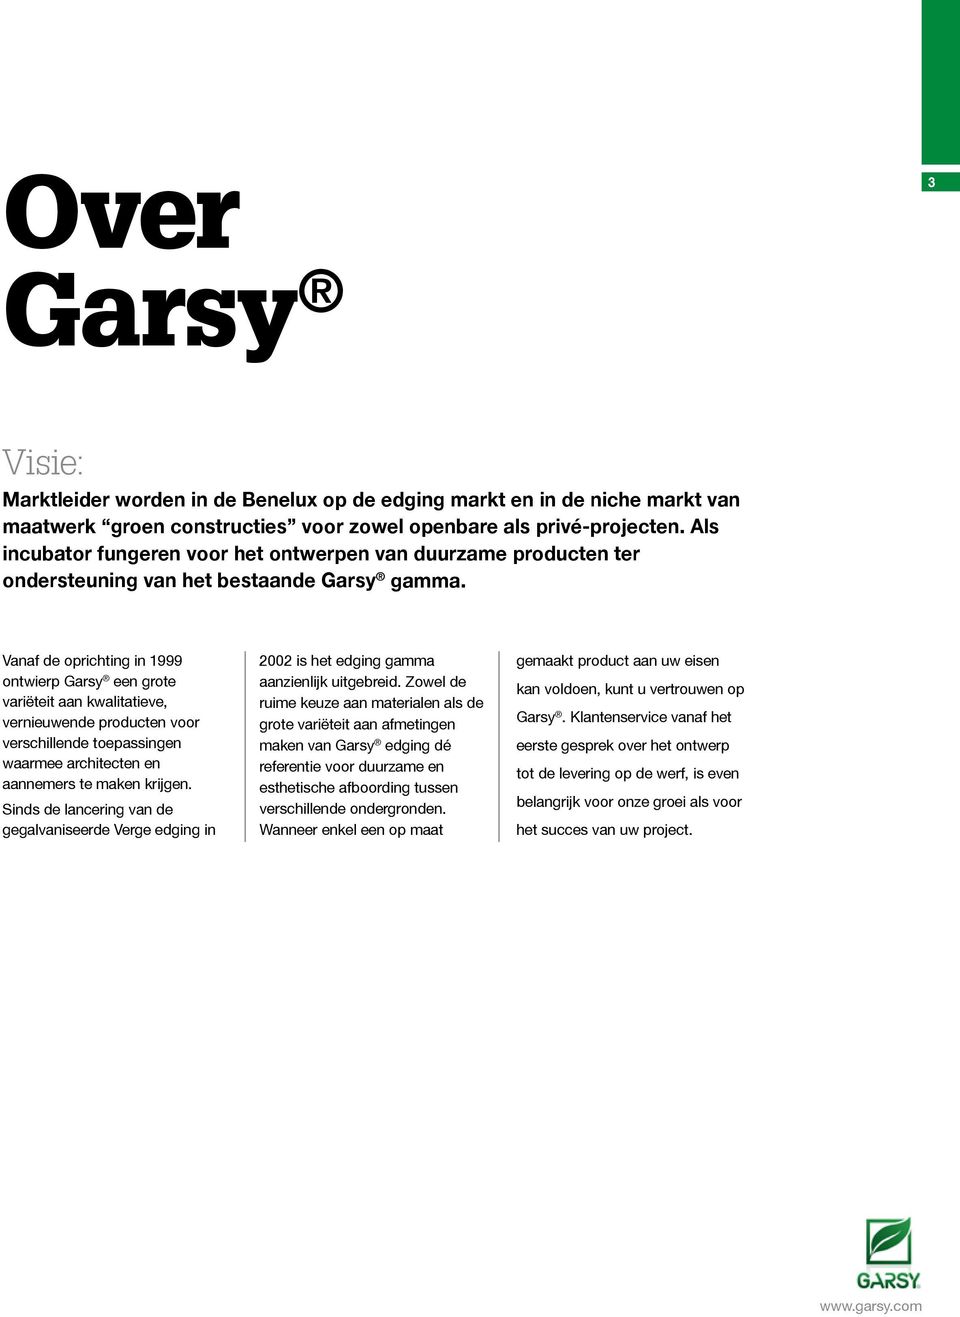 Vanaf de oprichting in 1999 ontwierp Garsy een grote variëteit aan kwalitatieve, vernieuwende producten voor verschillende toepassingen waarmee architecten en aannemers te maken krijgen.